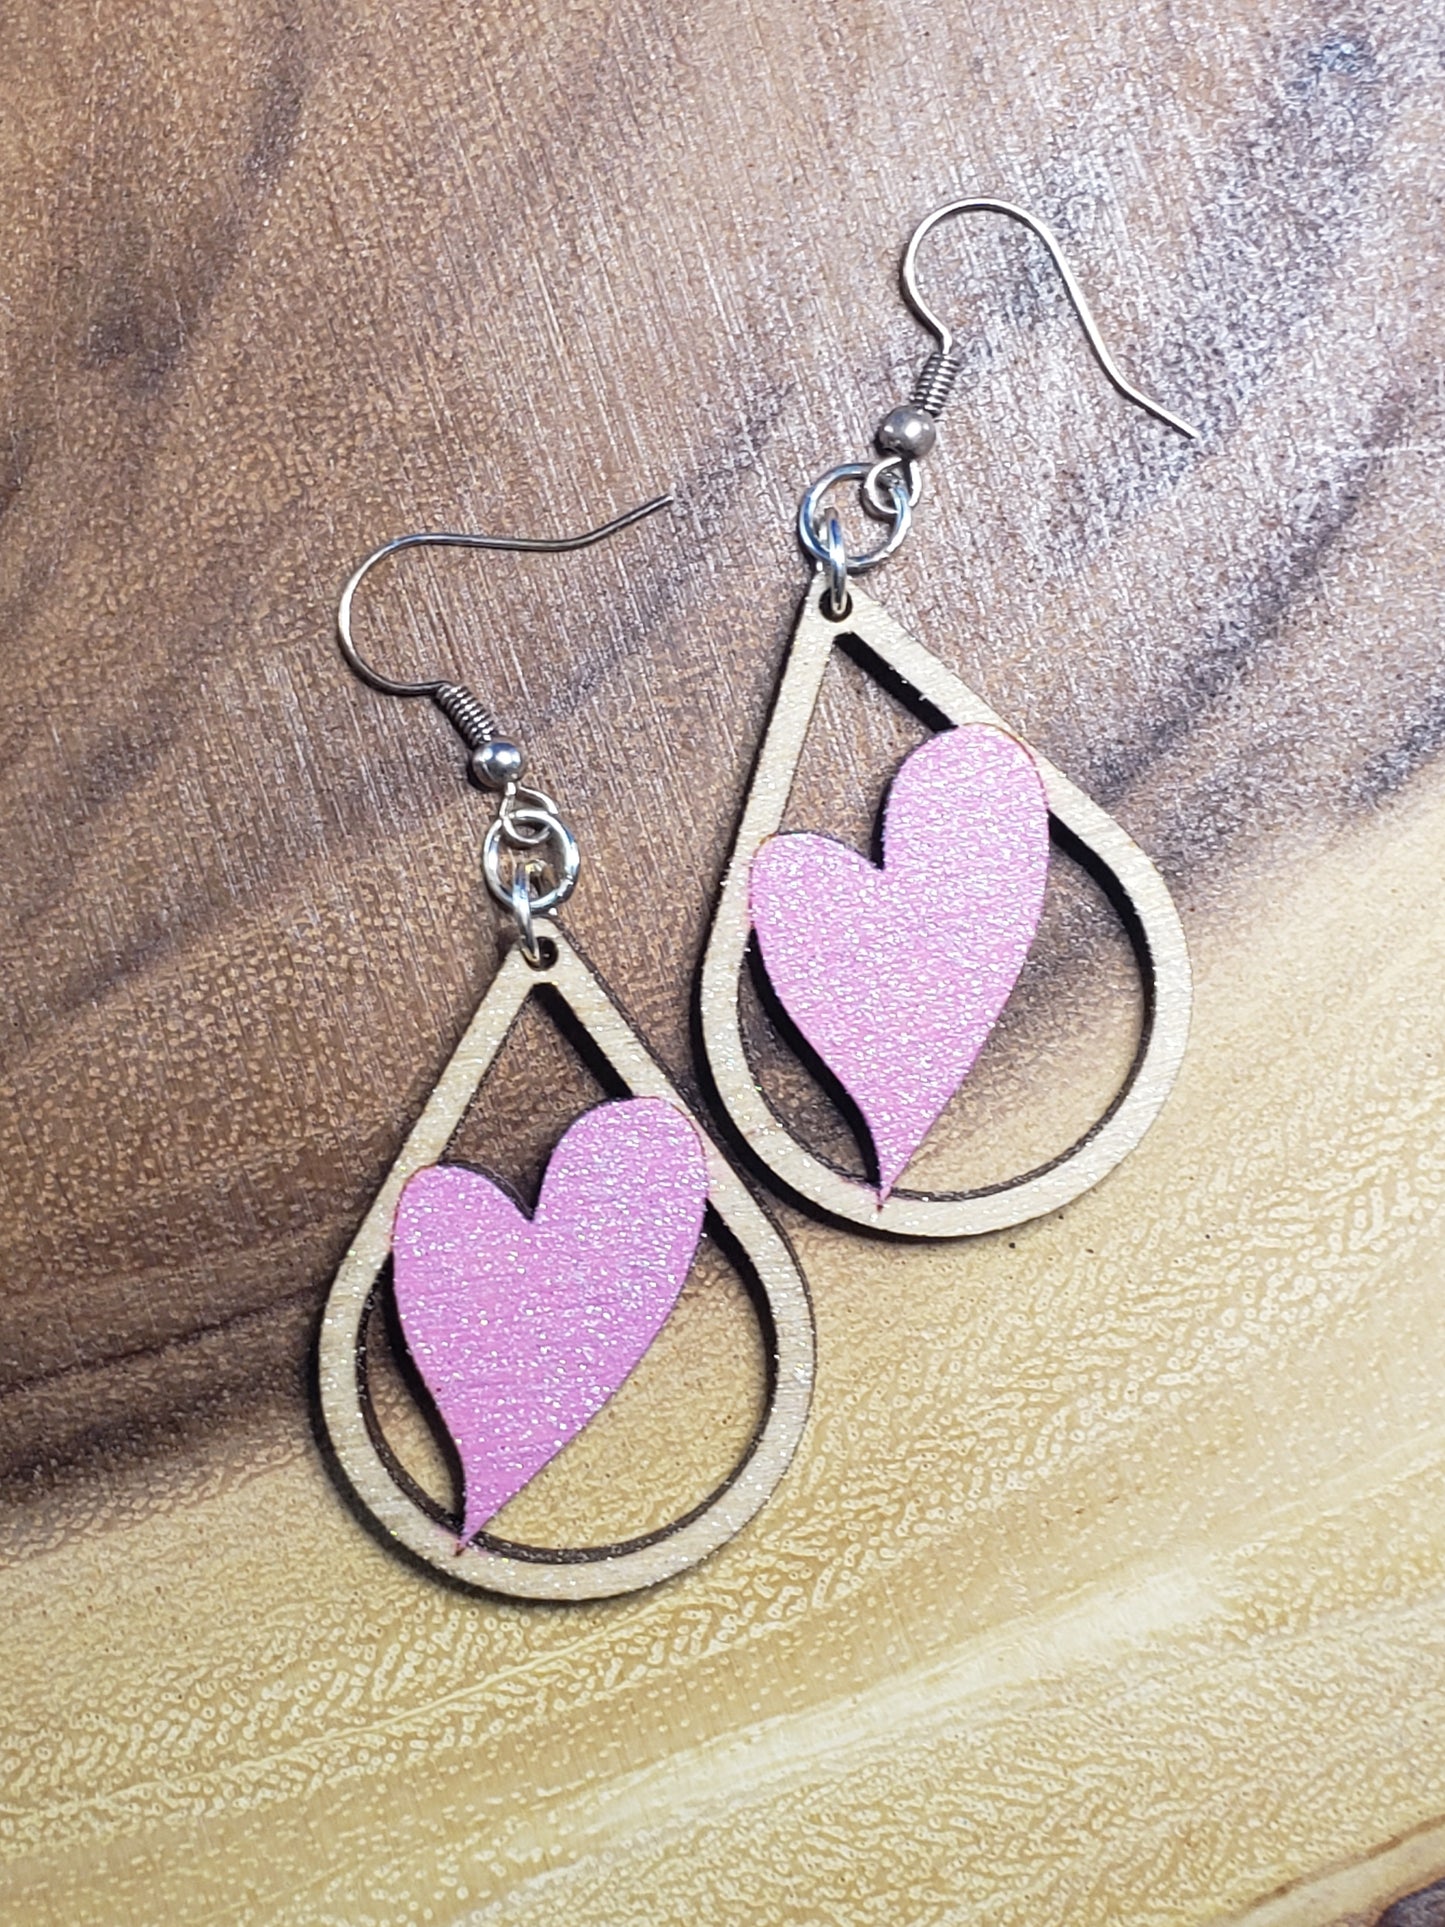 Heart Warped in Teardrop Light Pink Glitter - Hand Painted Laser Cut Earrings